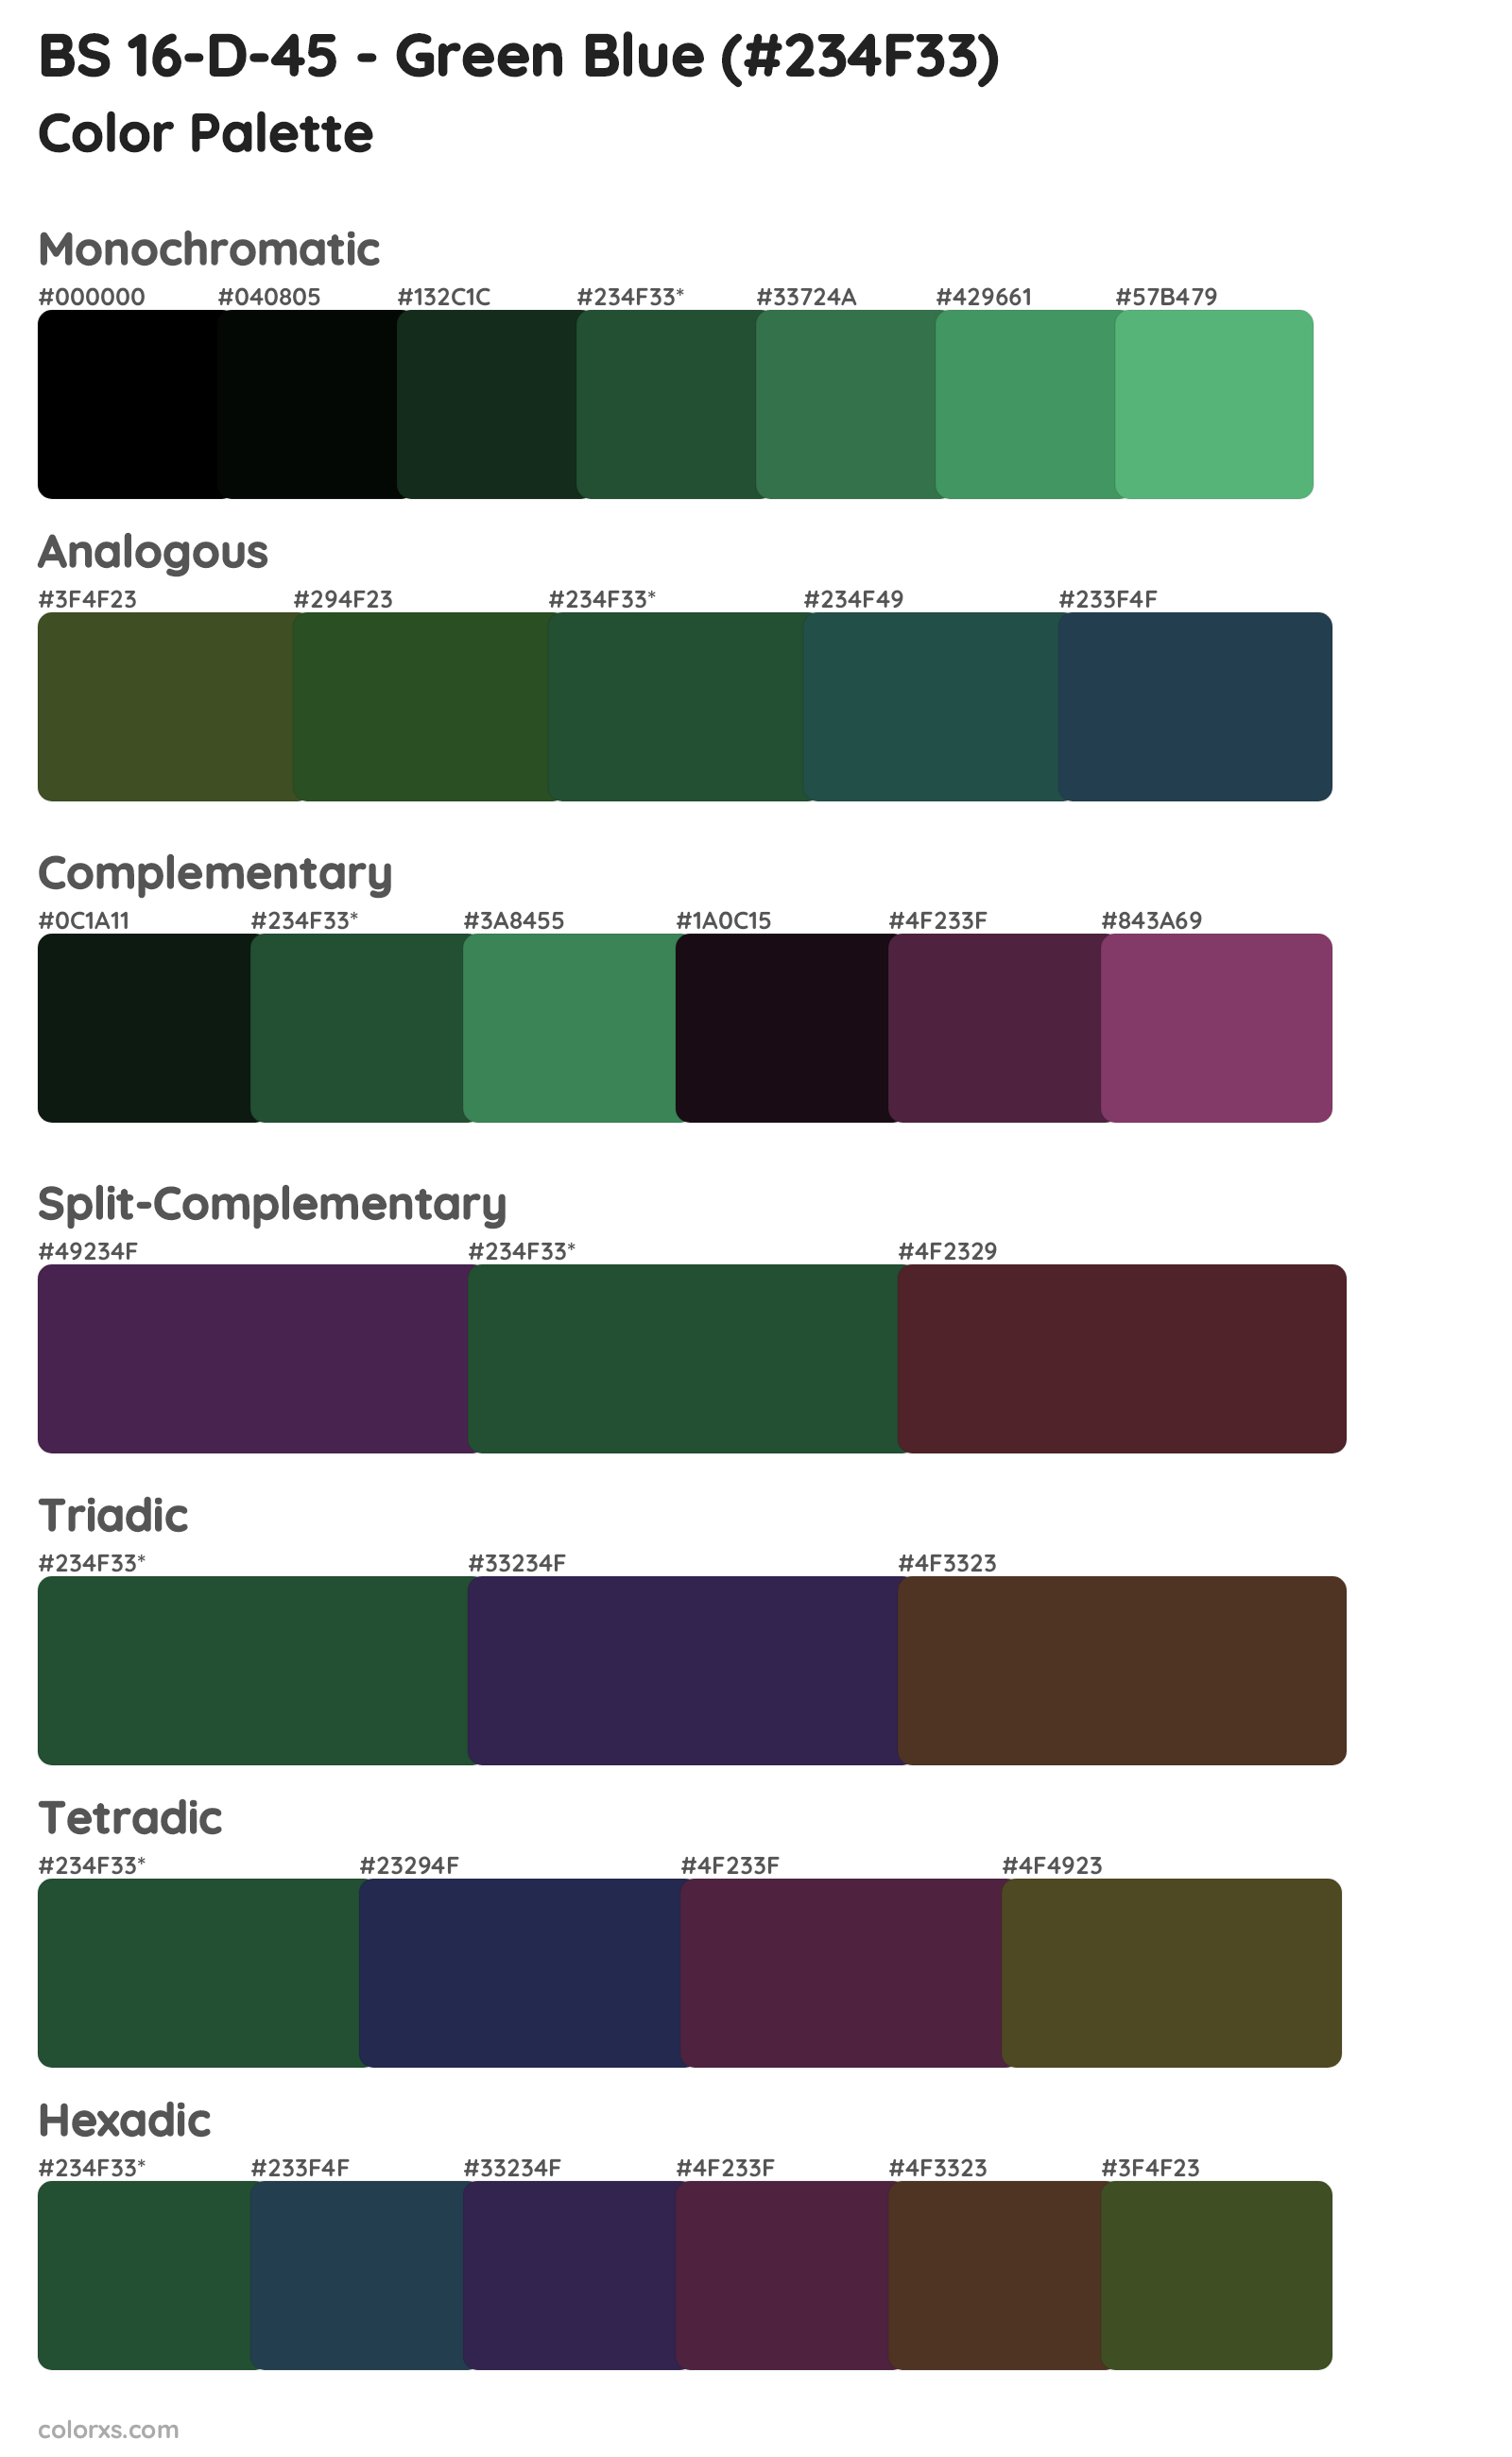 BS 16-D-45 - Green Blue Color Scheme Palettes